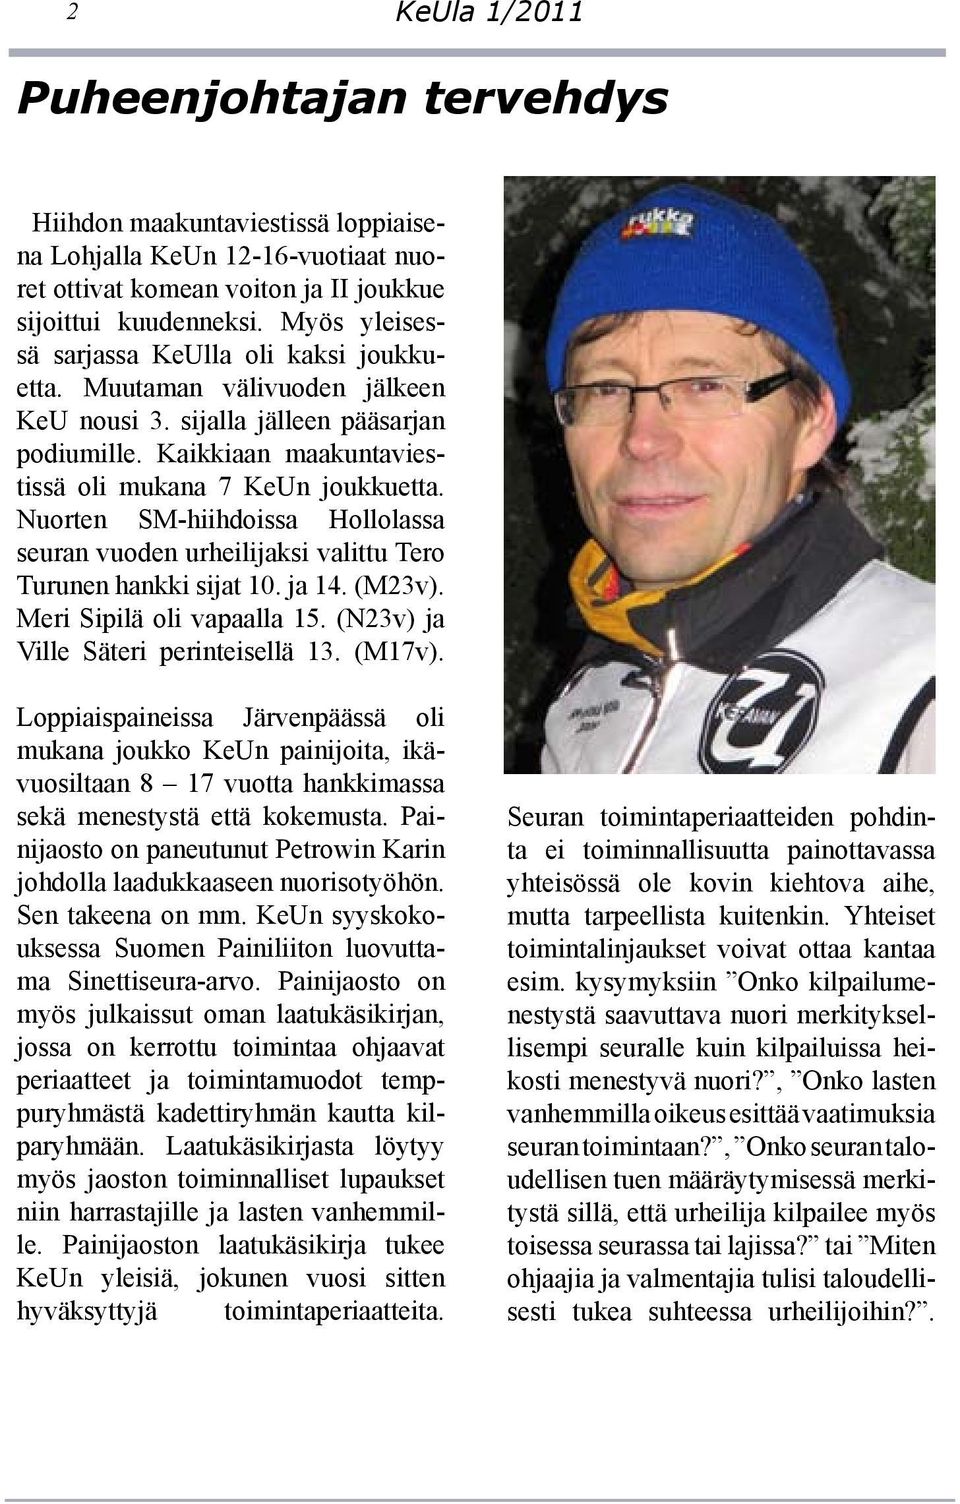 Nuorten SM-hiihdoissa Hollolassa seuran vuoden urheilijaksi valittu Tero Turunen hankki sijat 10. ja 14. (M23v). Meri Sipilä oli vapaalla 15. (N23v) ja Ville Säteri perinteisellä 13. (M17v).